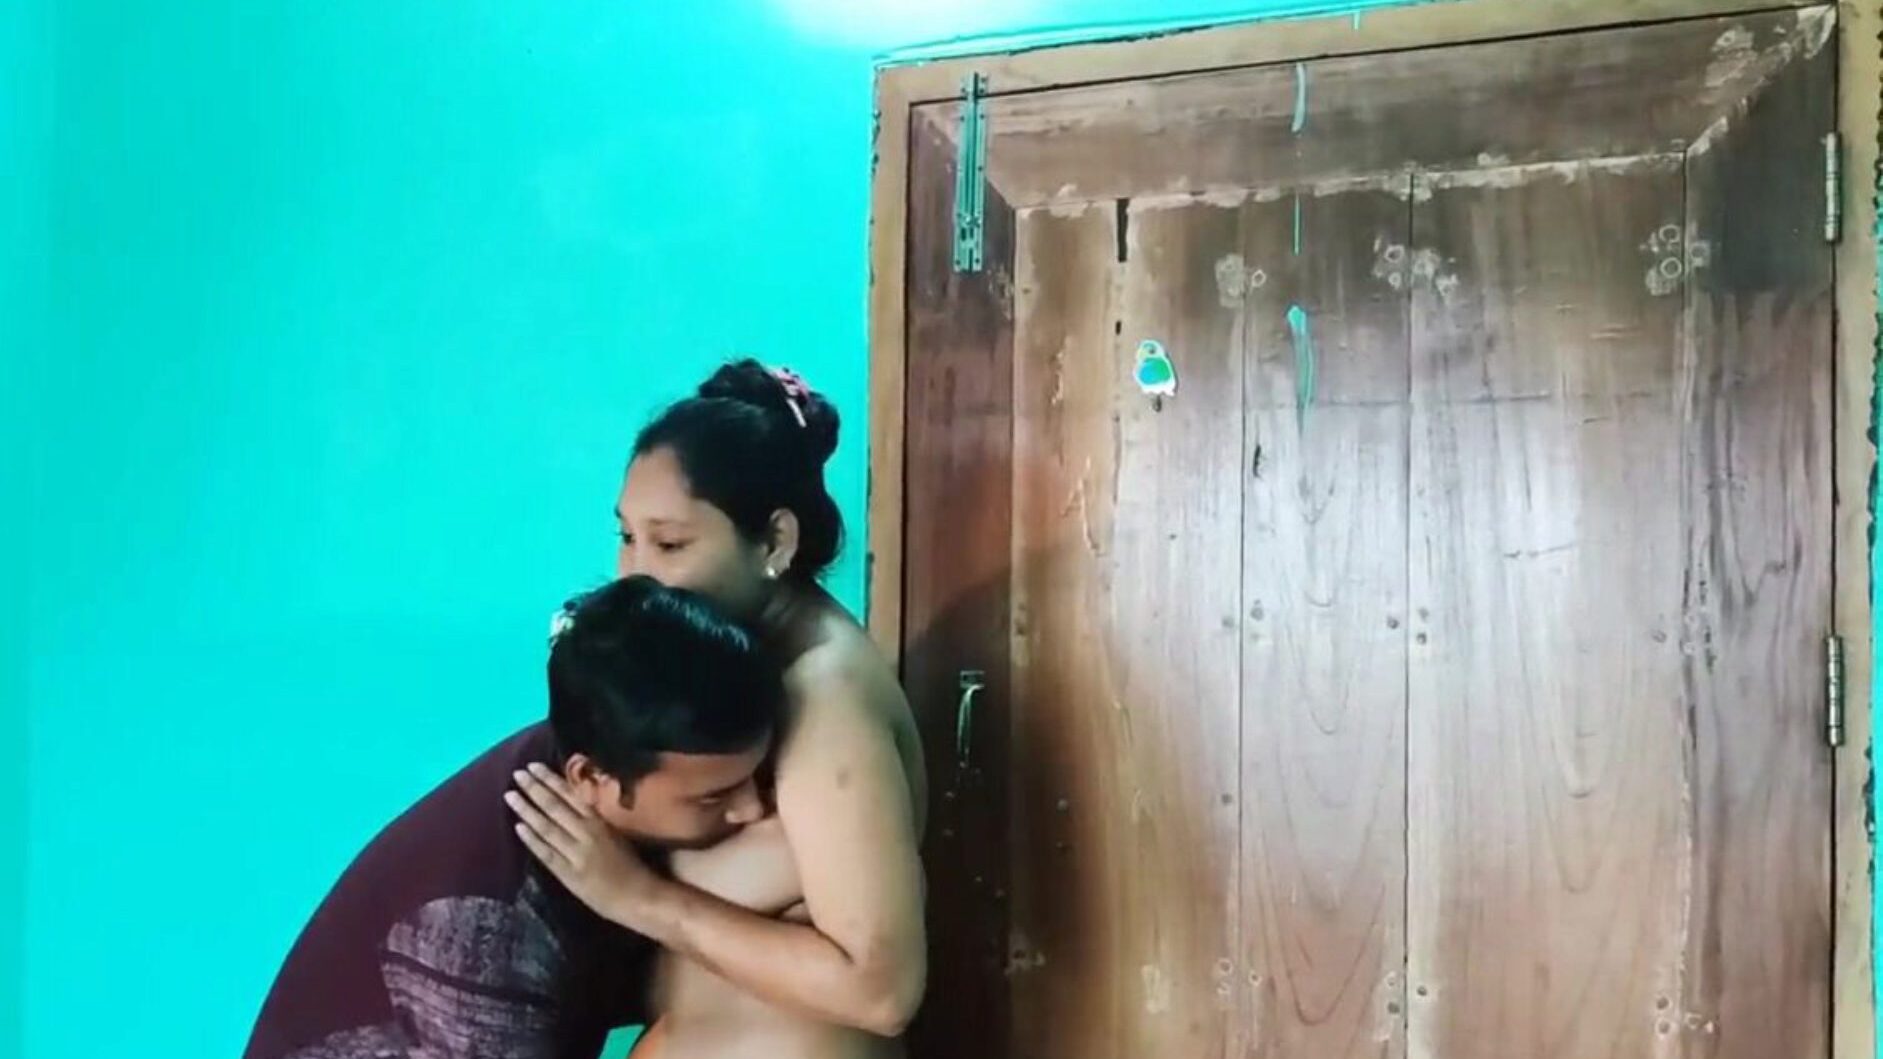 desi bengálský sex video nahý, asijské porno zdarma 6c: xhamster sledovat desi bengálský sex video nahá epizoda na xhamster, nejtučnější hd kurva-fest trubice webový zdroj s hromadou free-for-all asijských xxn sex a anální pornografie vids